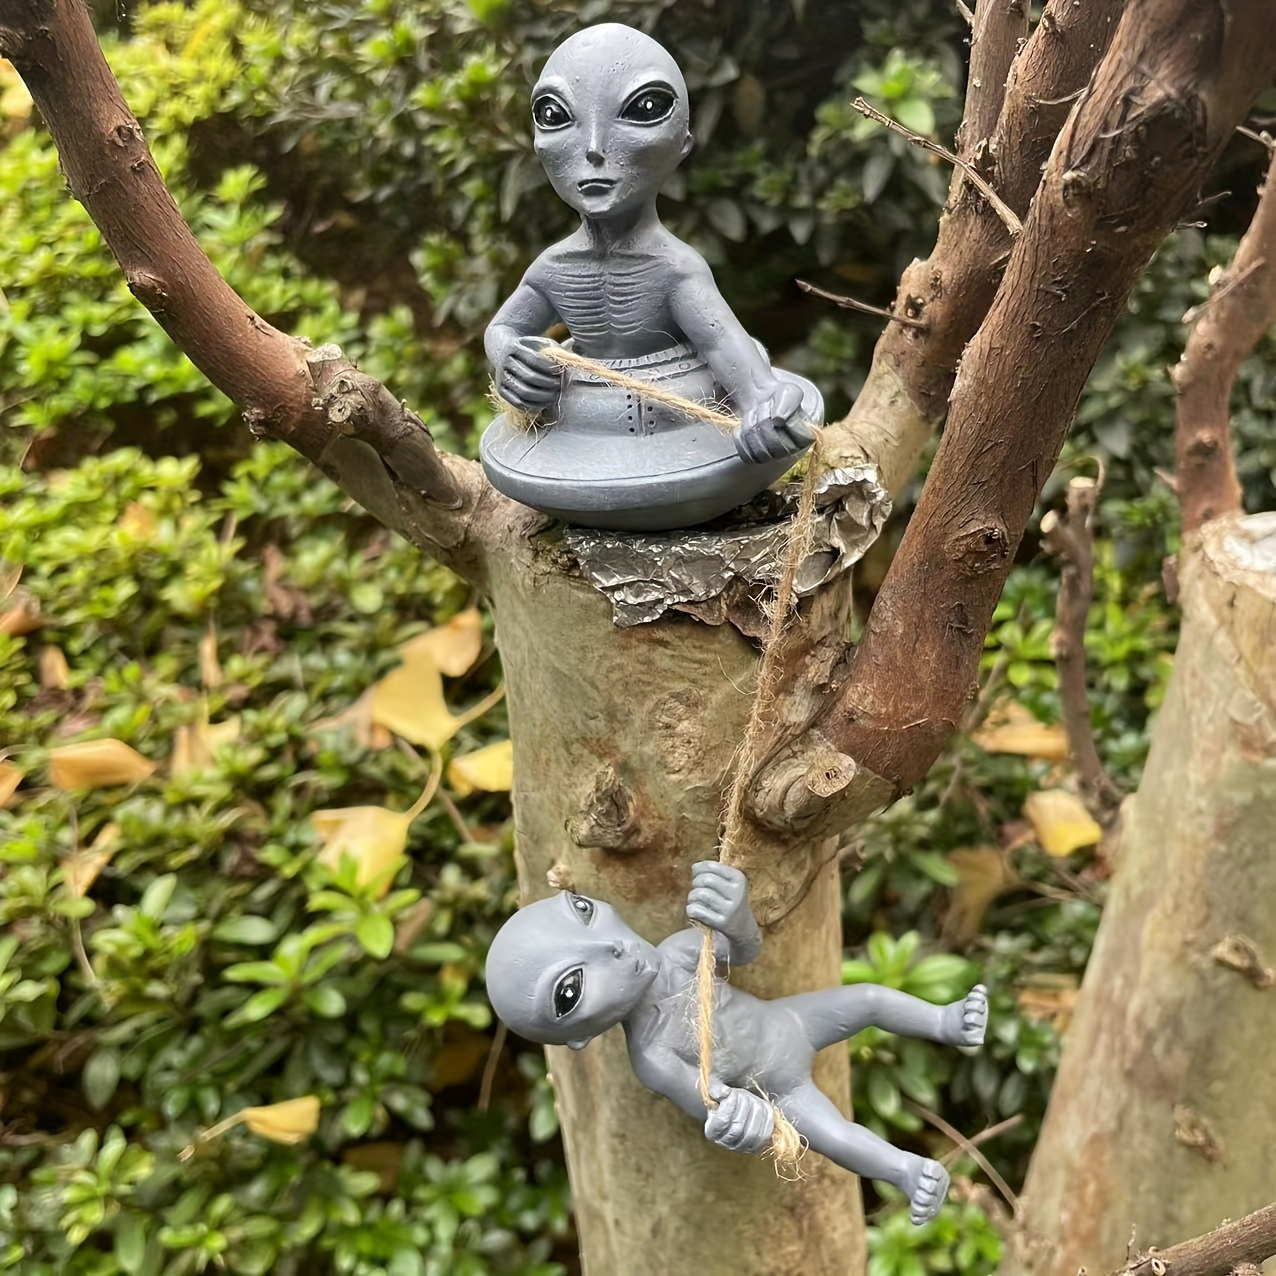 3 eyed Alien Sculpture: Add A Magical Touch Garden Handmade - Temu